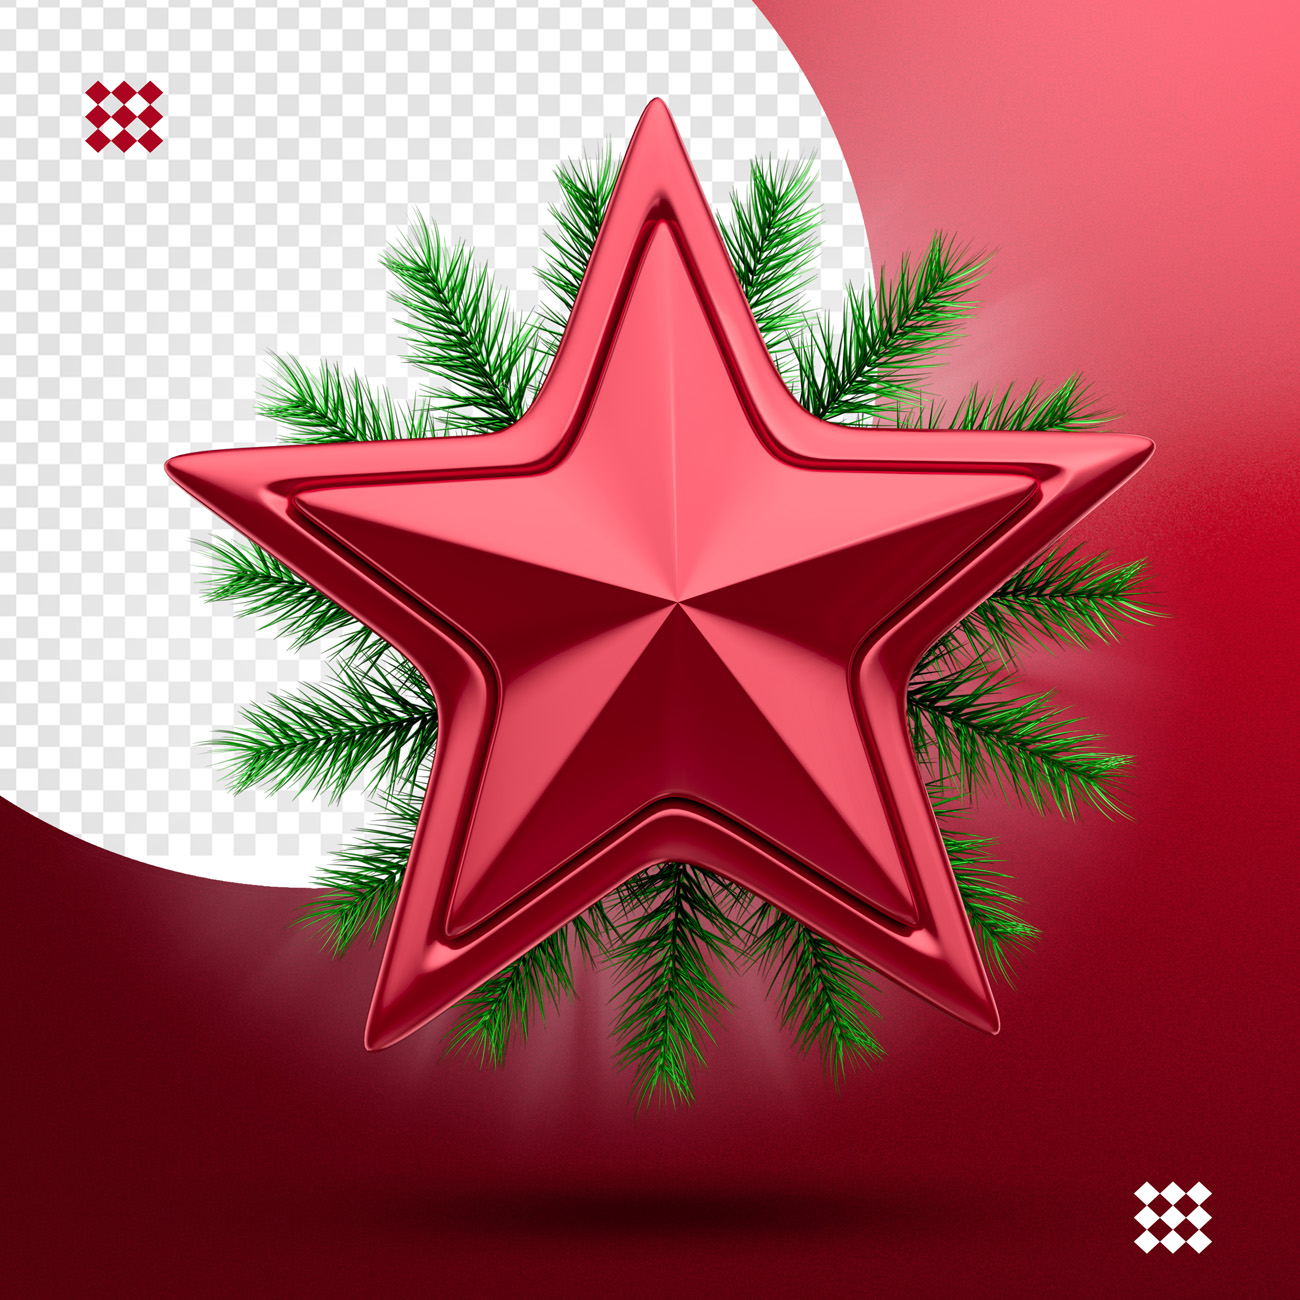 圣诞节五角星三维立体图标素材 3d christmas st